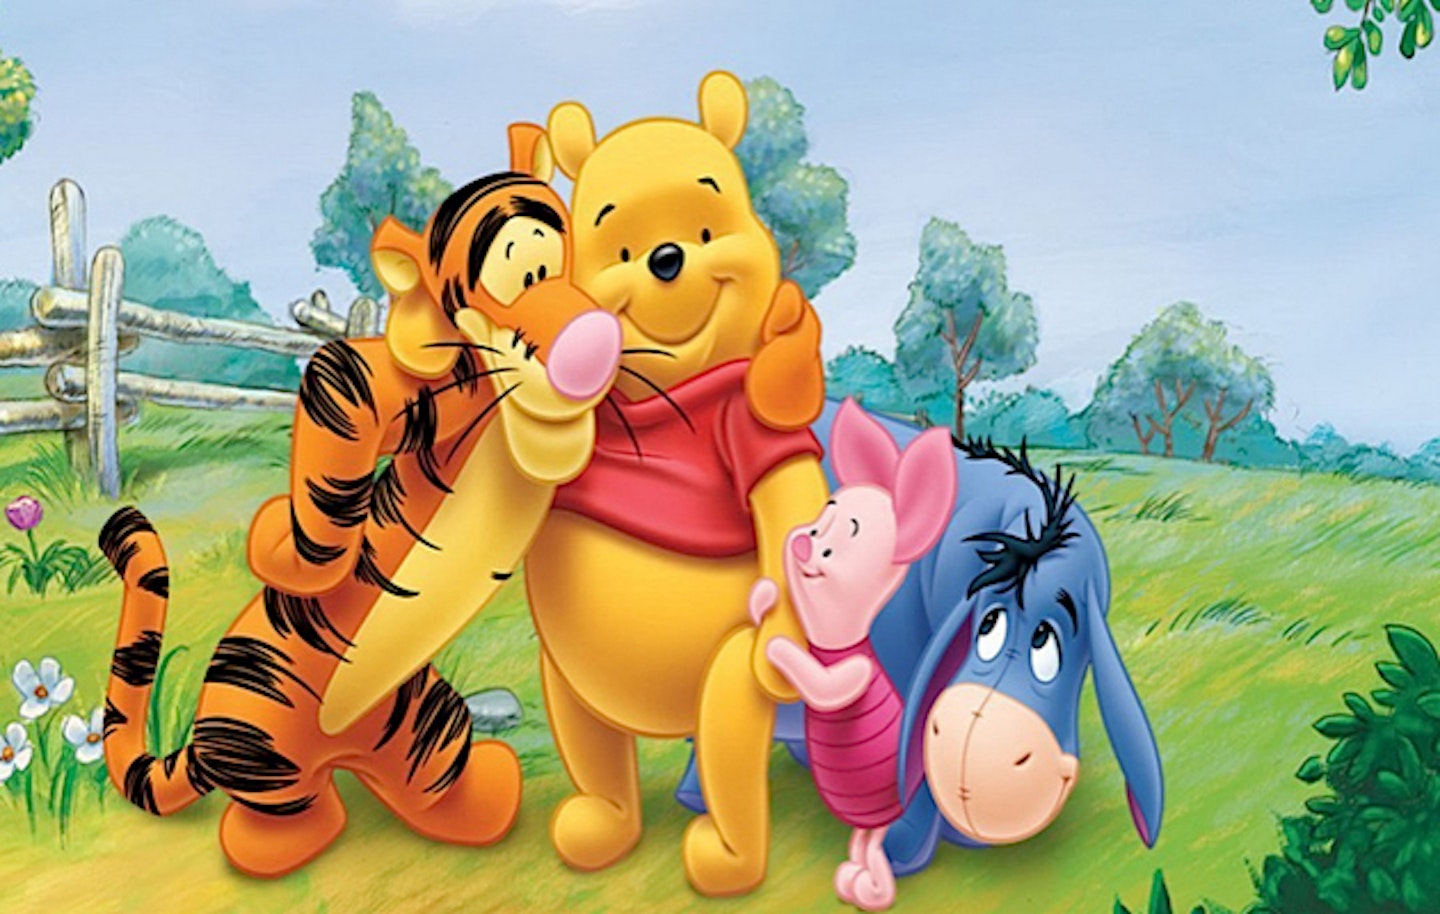 Disney-Plans-Live-Action-Pooh